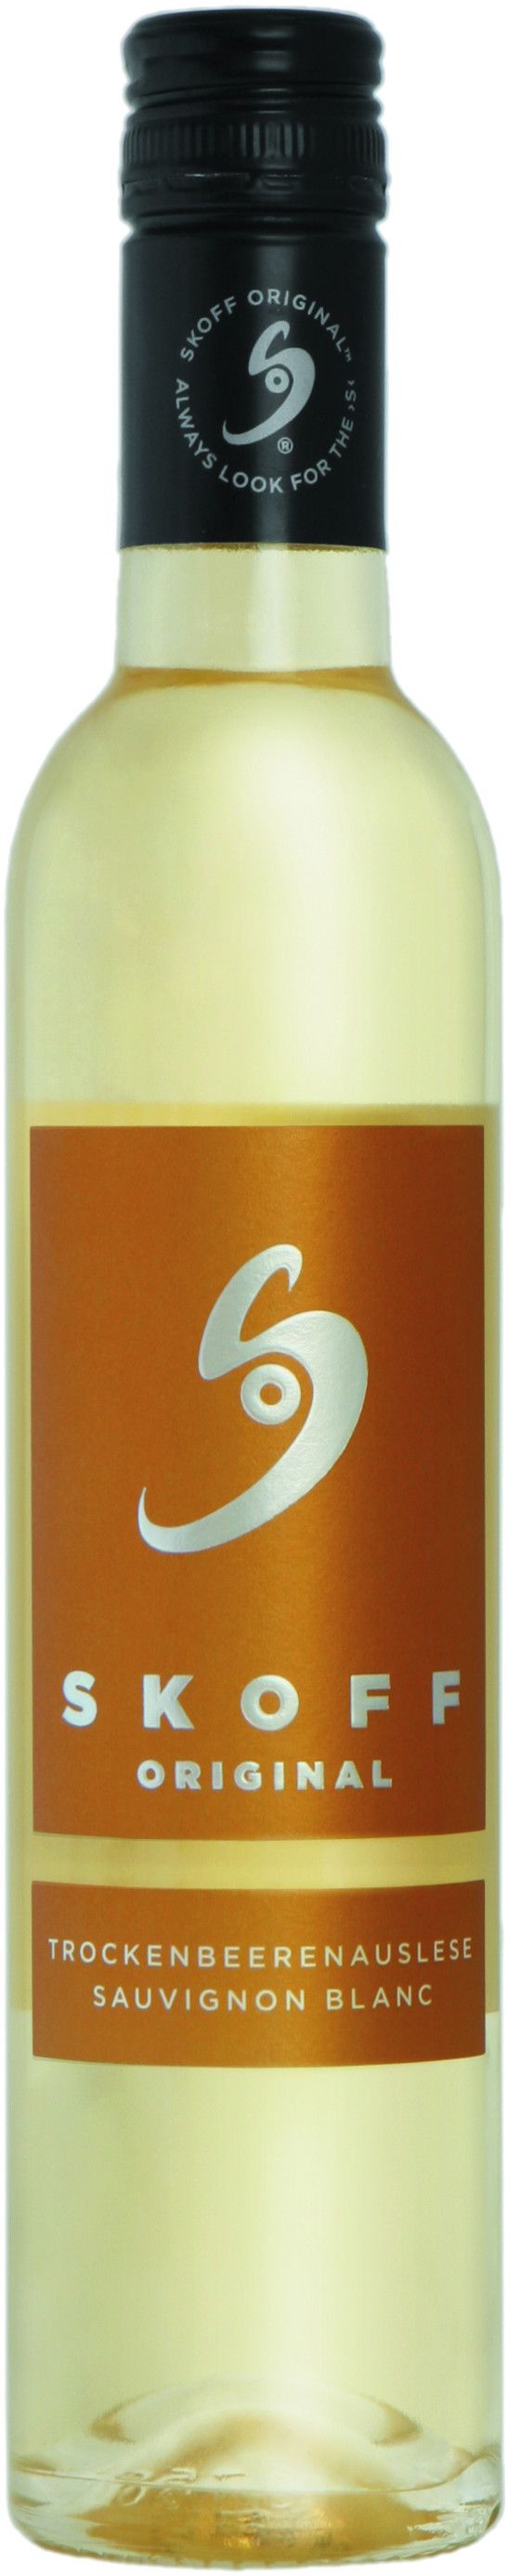 Skoff, Trockenbeerenauslese Sauvignon Blanc, 2012